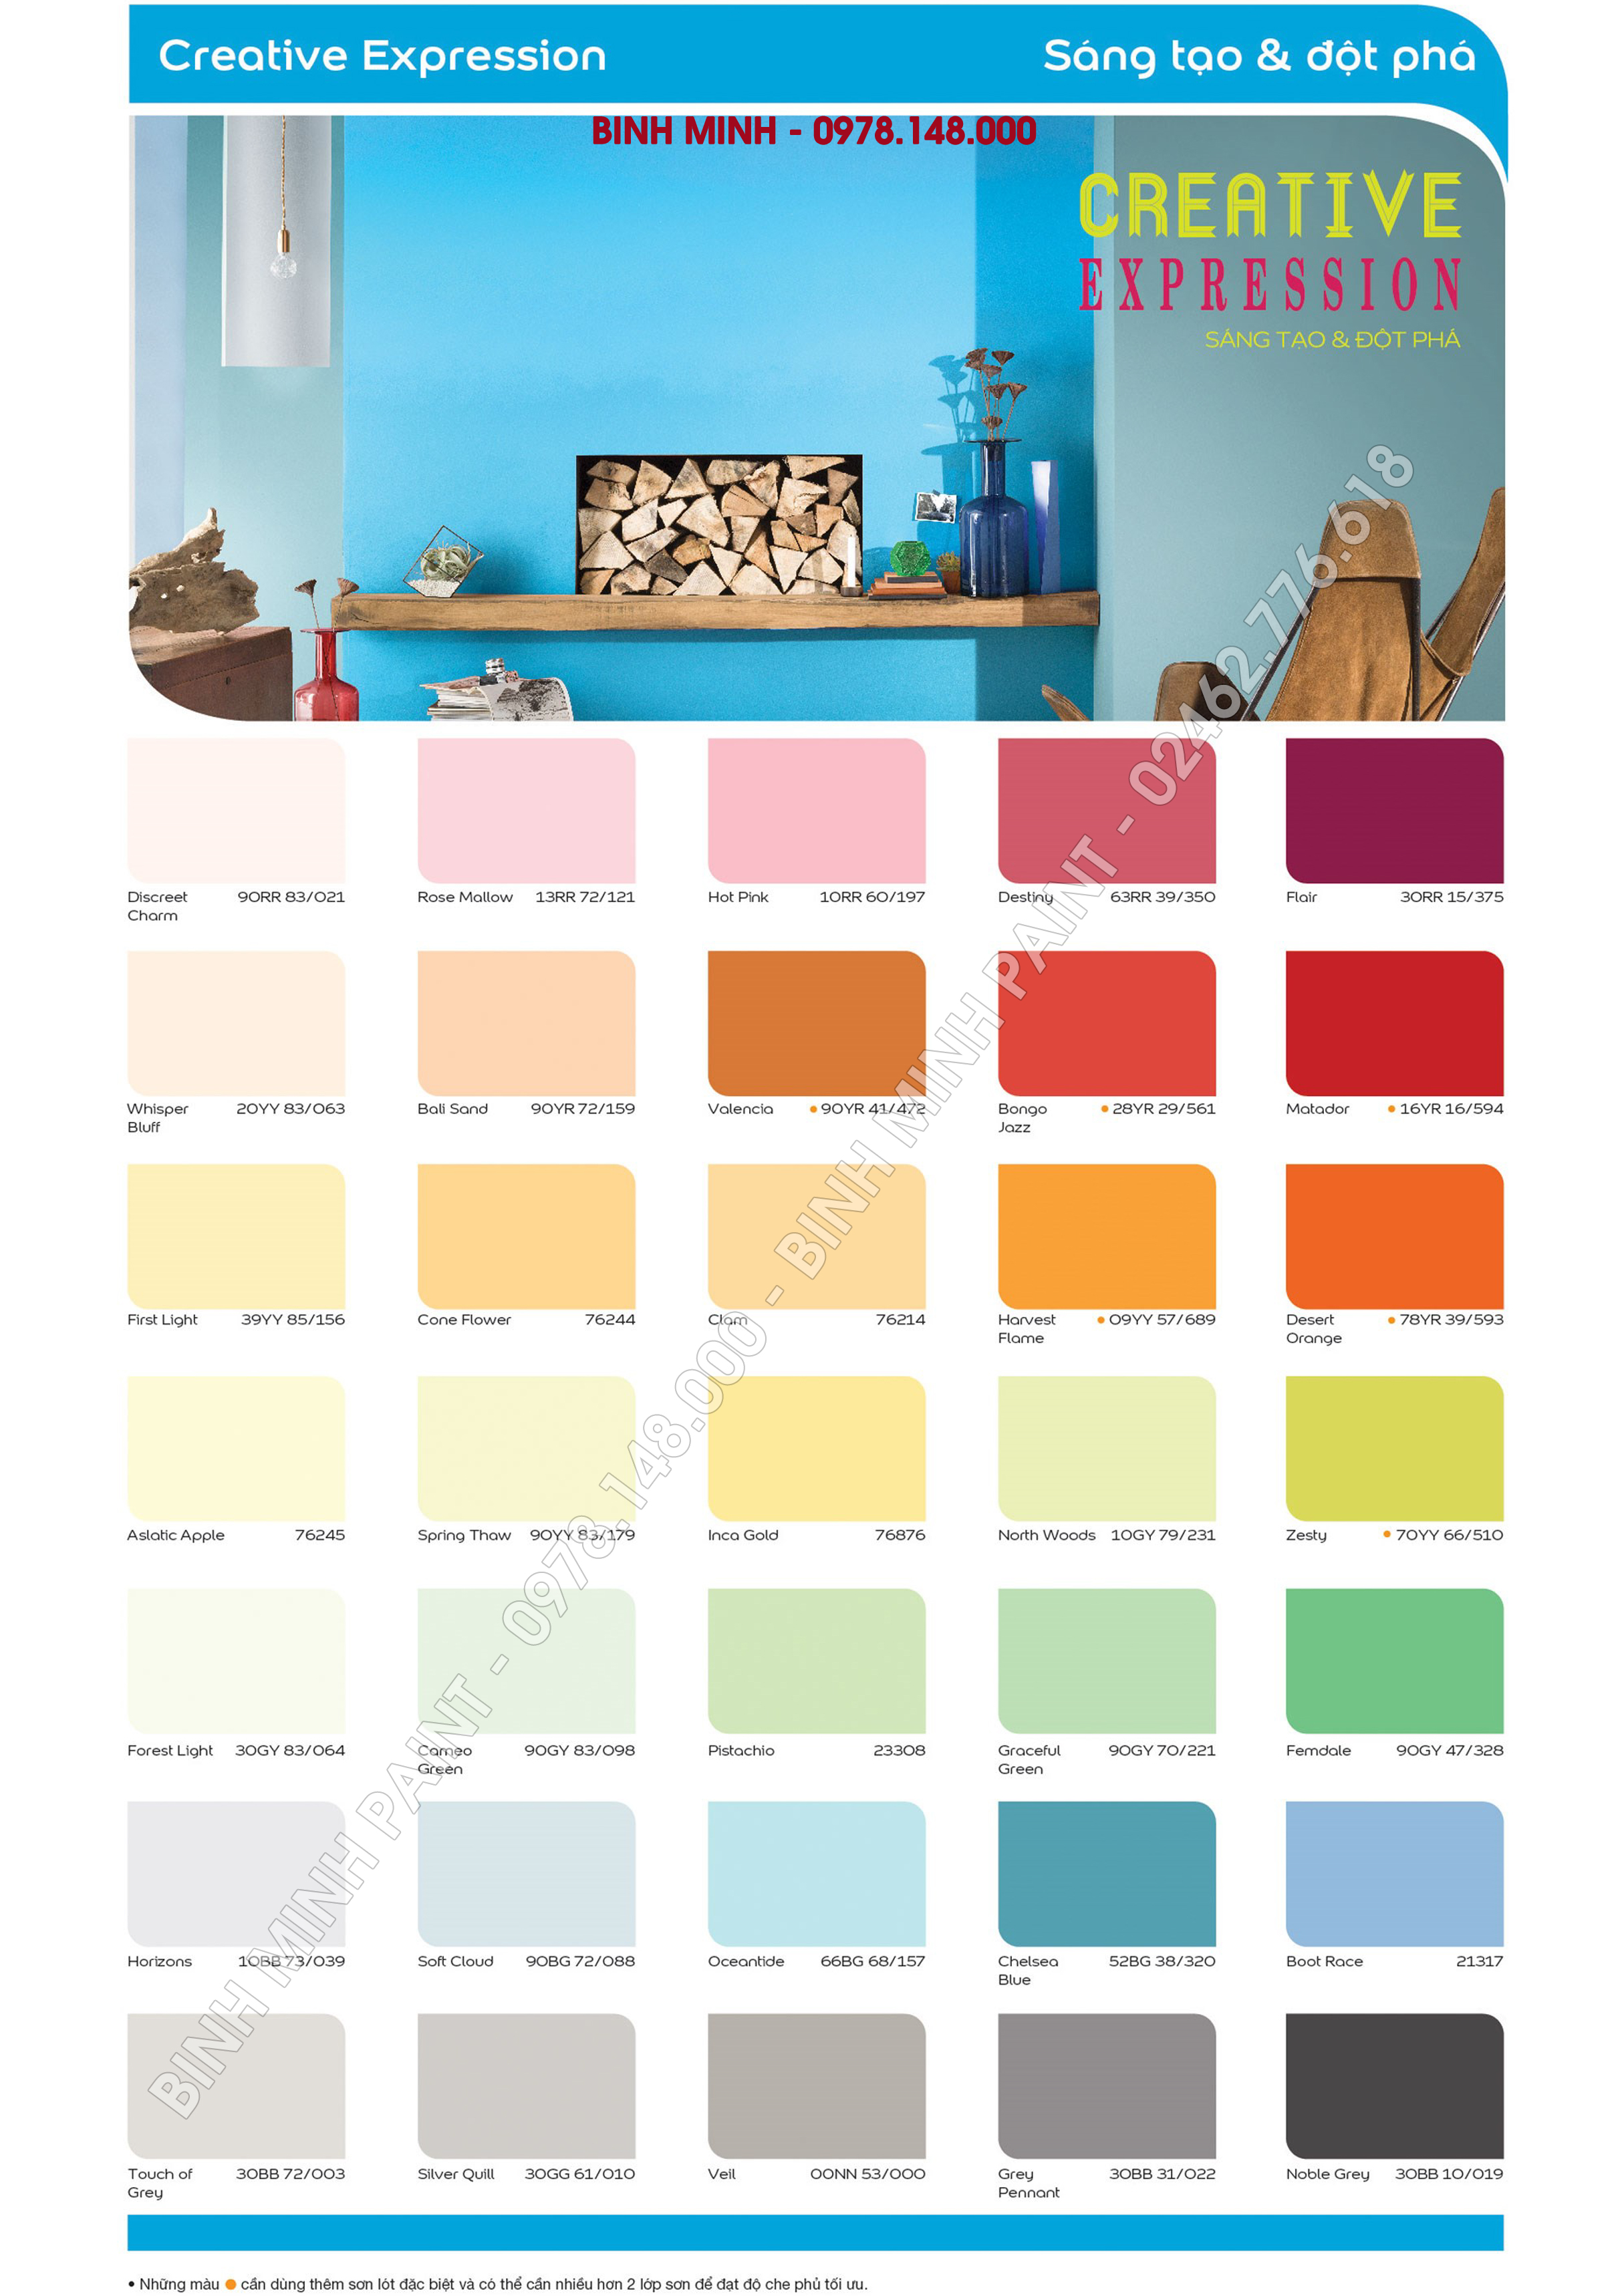 Bảng màu sơn Dulux 5 in 1:Khám phá tất cả các màu trong bảng màu sơn Dulux 5 in 1 đa dạng và chất lượng, để tạo ra sự độc đáo trong không gian sống của bạn. Sản phẩm này ngay lập tức làm nổi bật các khía cạnh đẹp nhất của căn phòng của bạn.